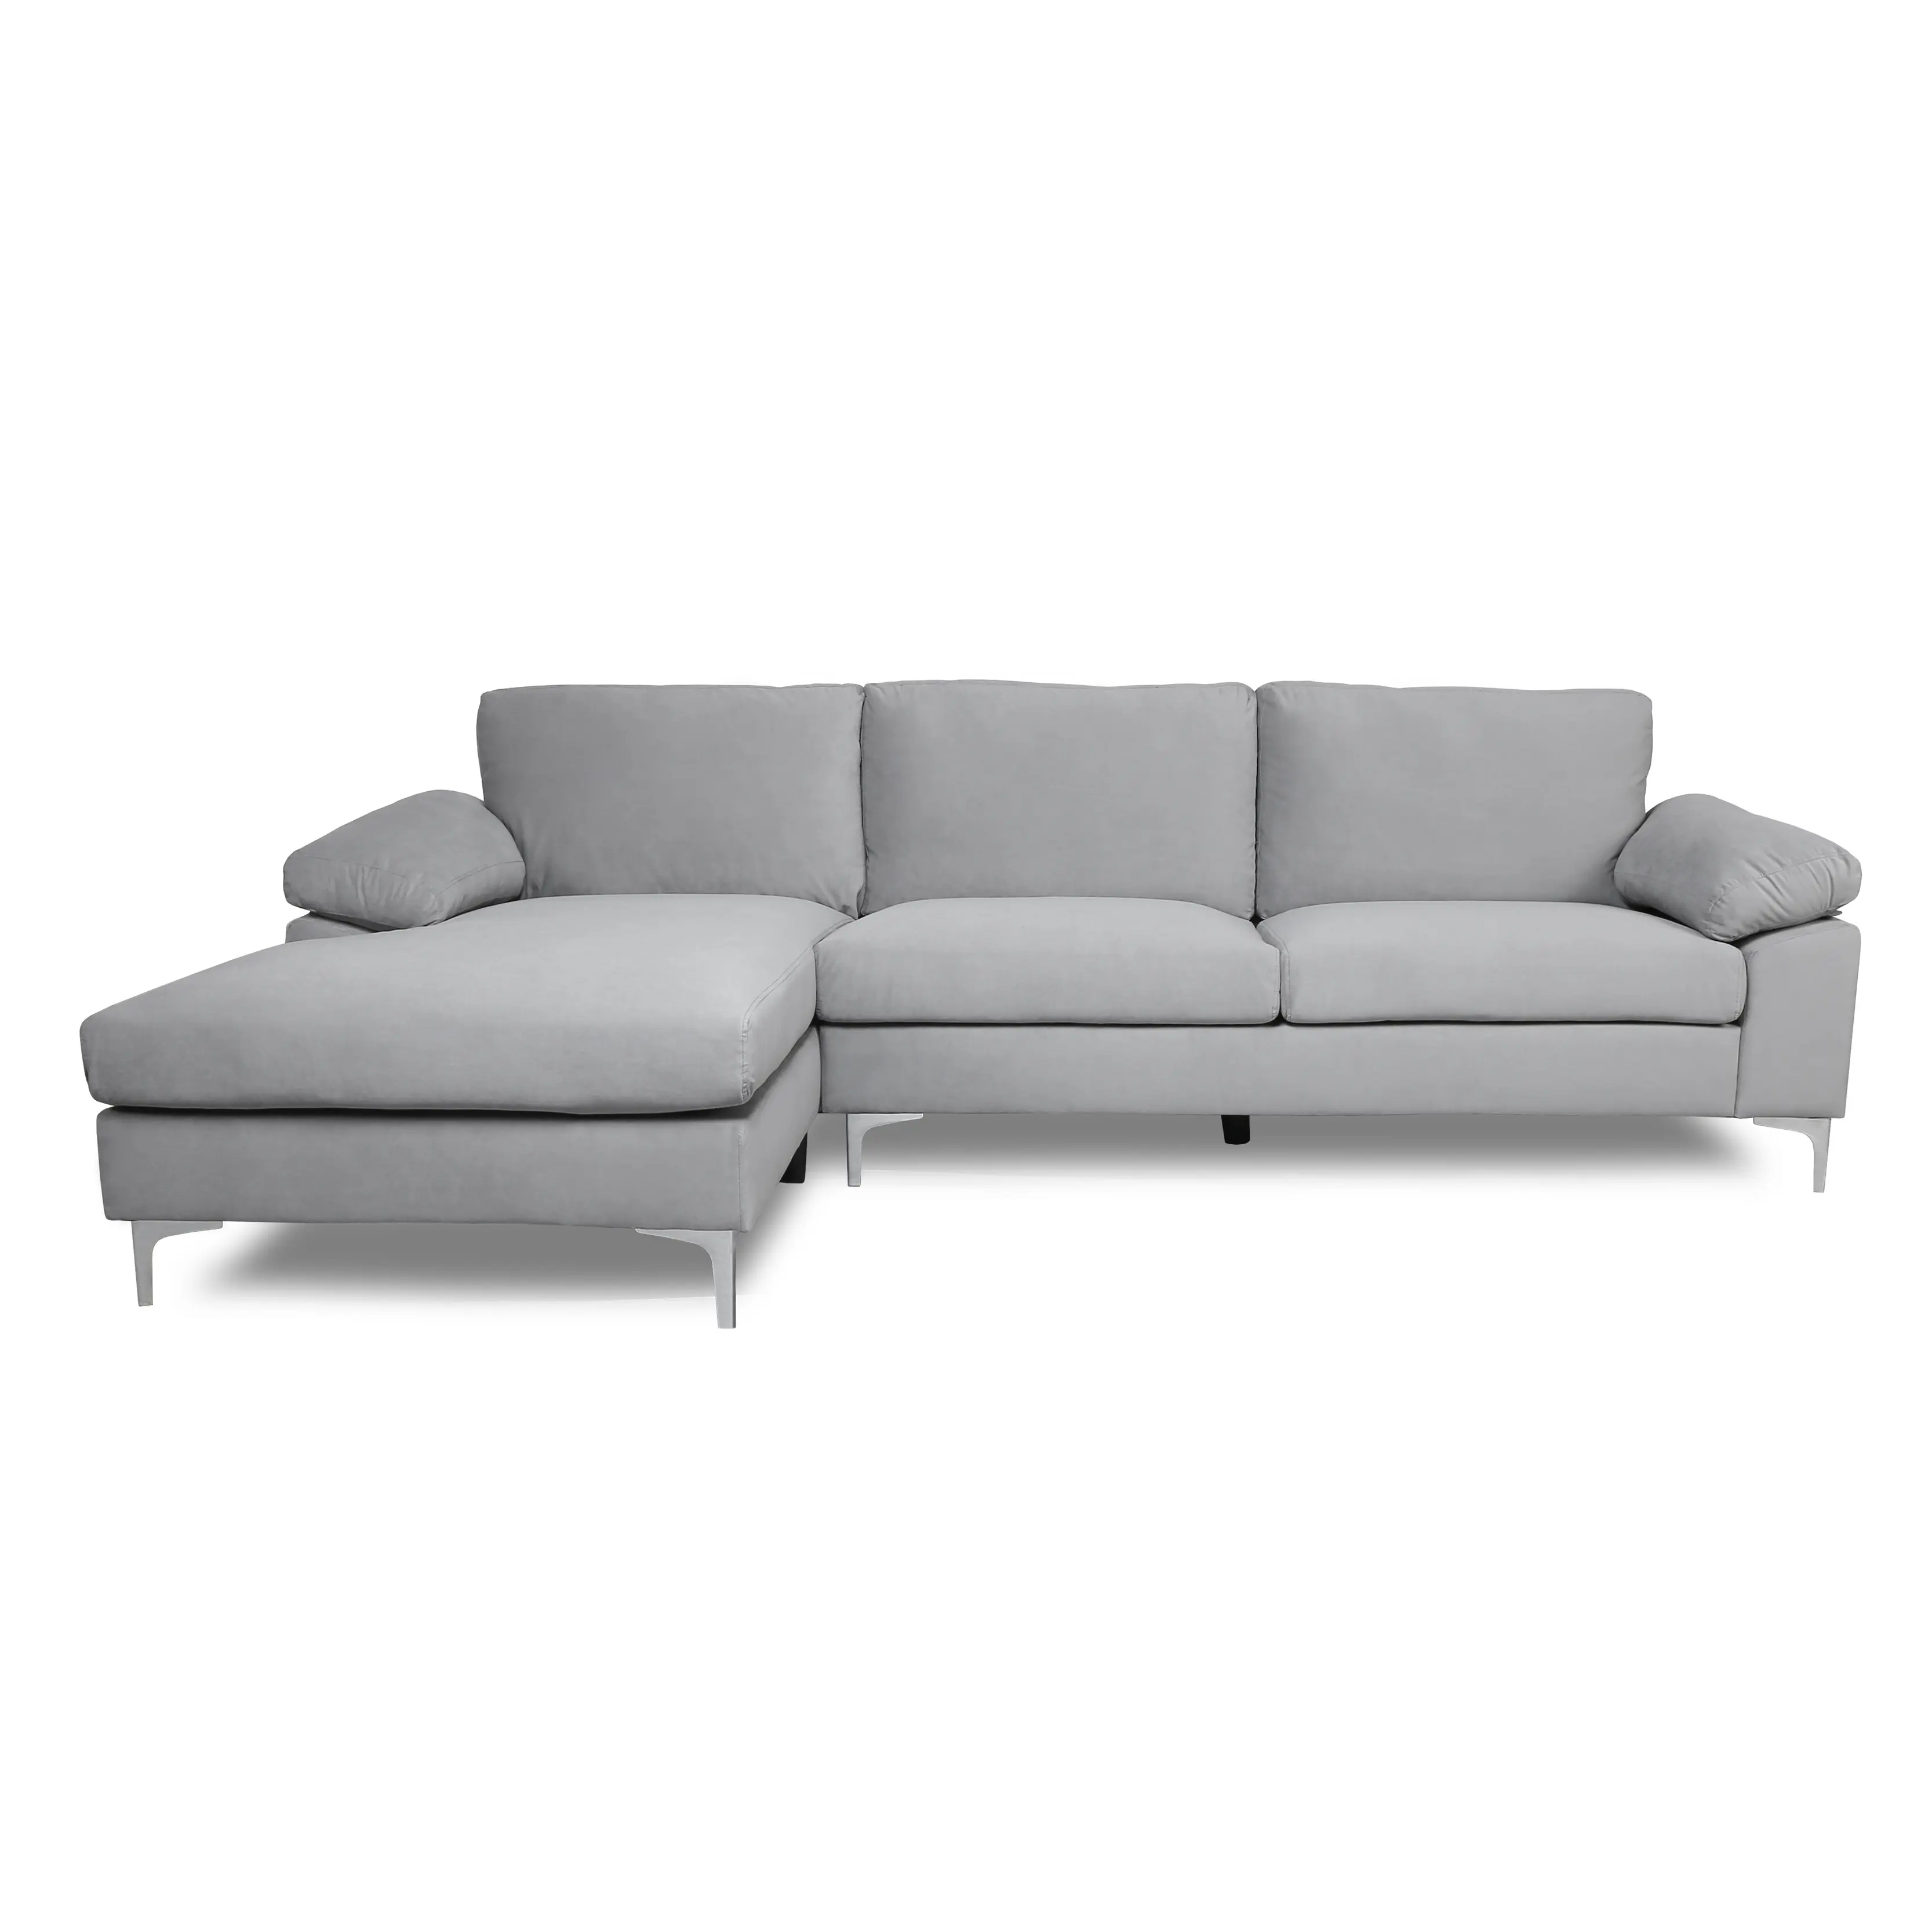 Sofá de tela cinza claro para sala de estar, venda por atacado